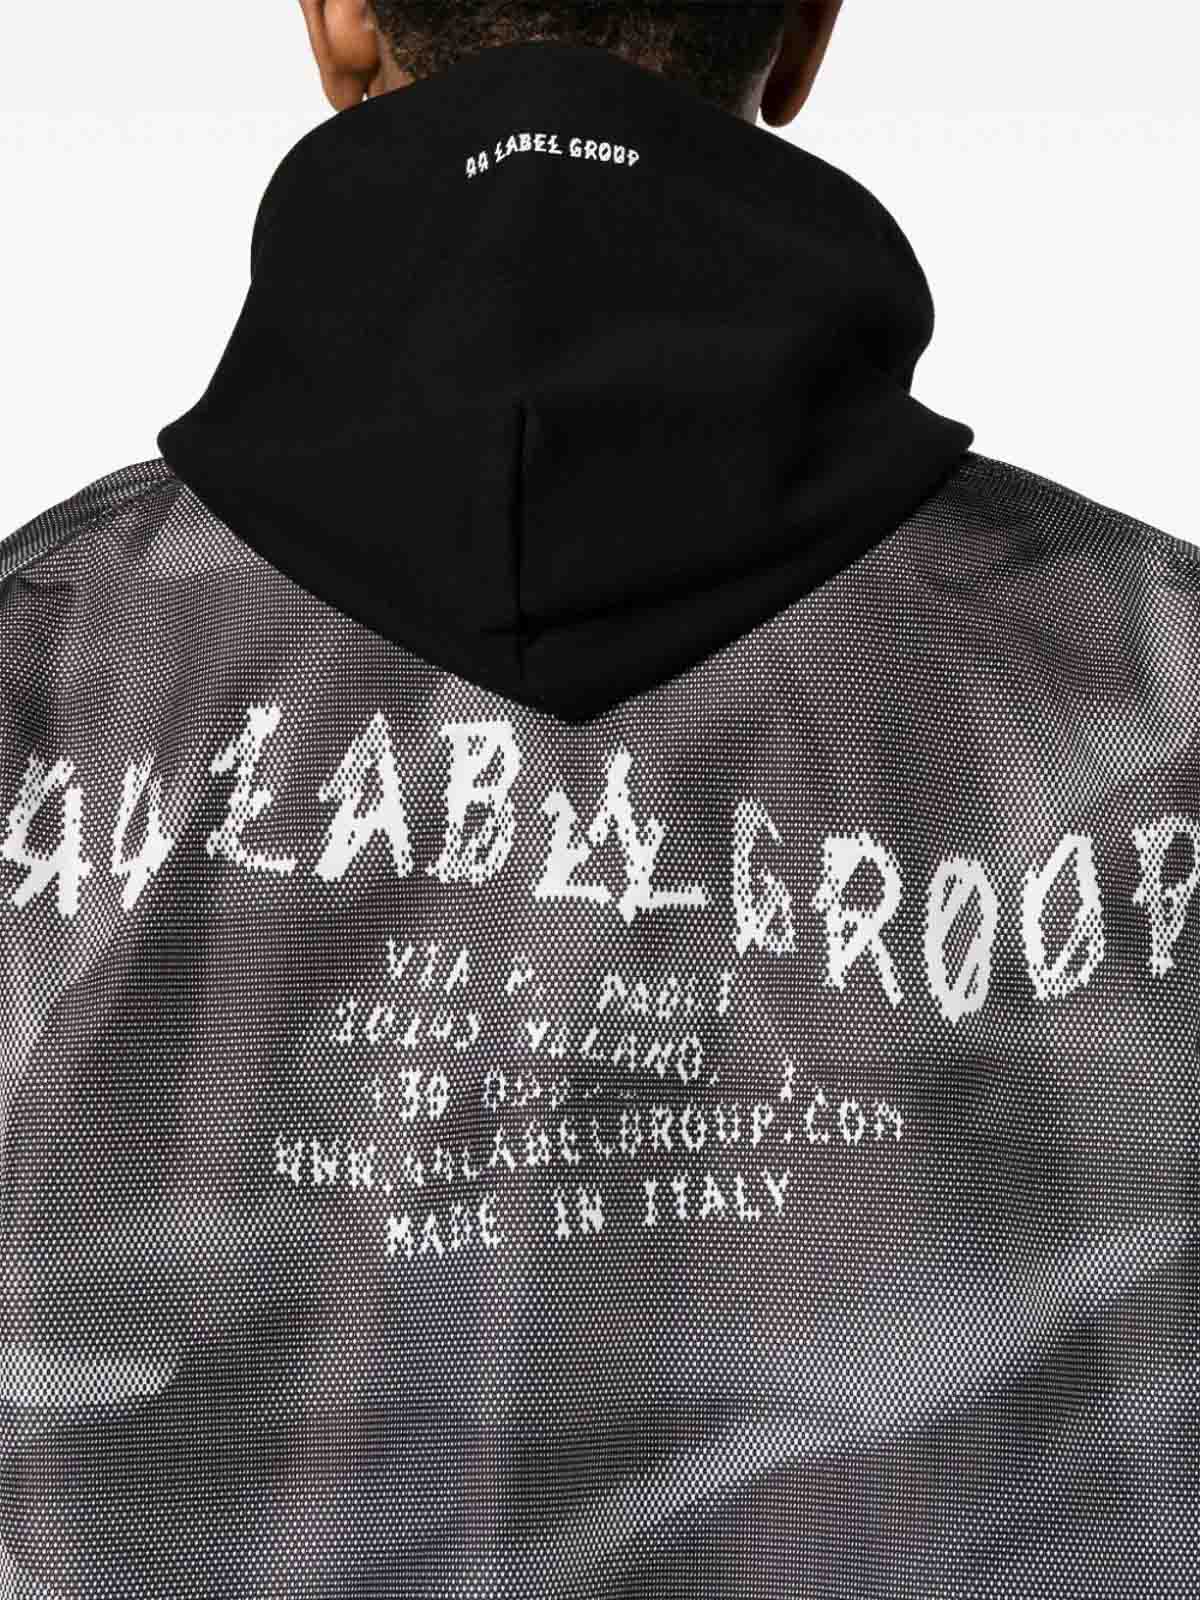 Shop 44 Label Group Bomber In Black